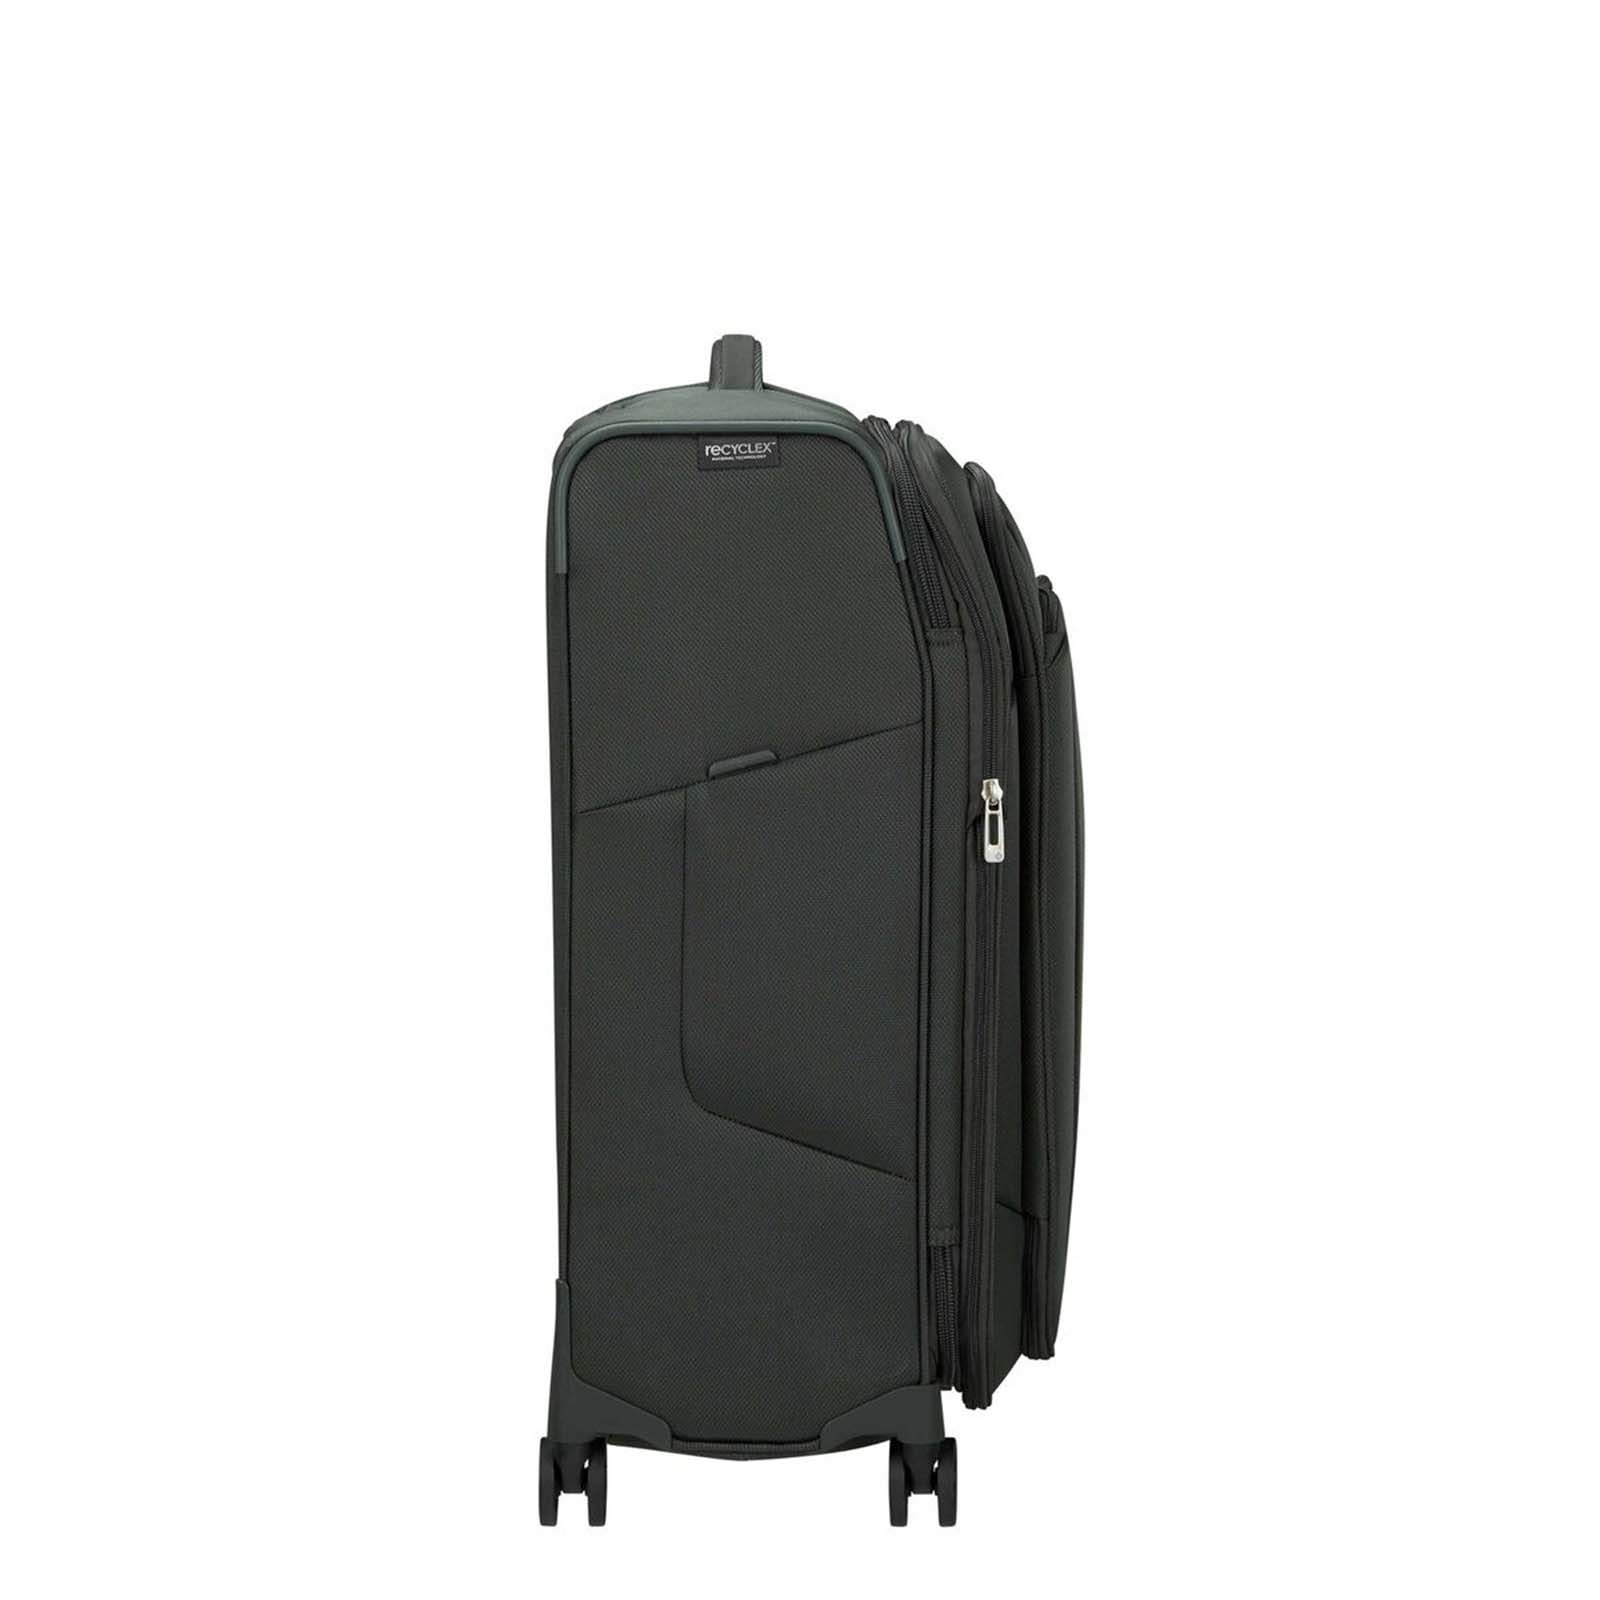 Samsonite-Respark-67cm-Suitcase-Forest-Green-Side